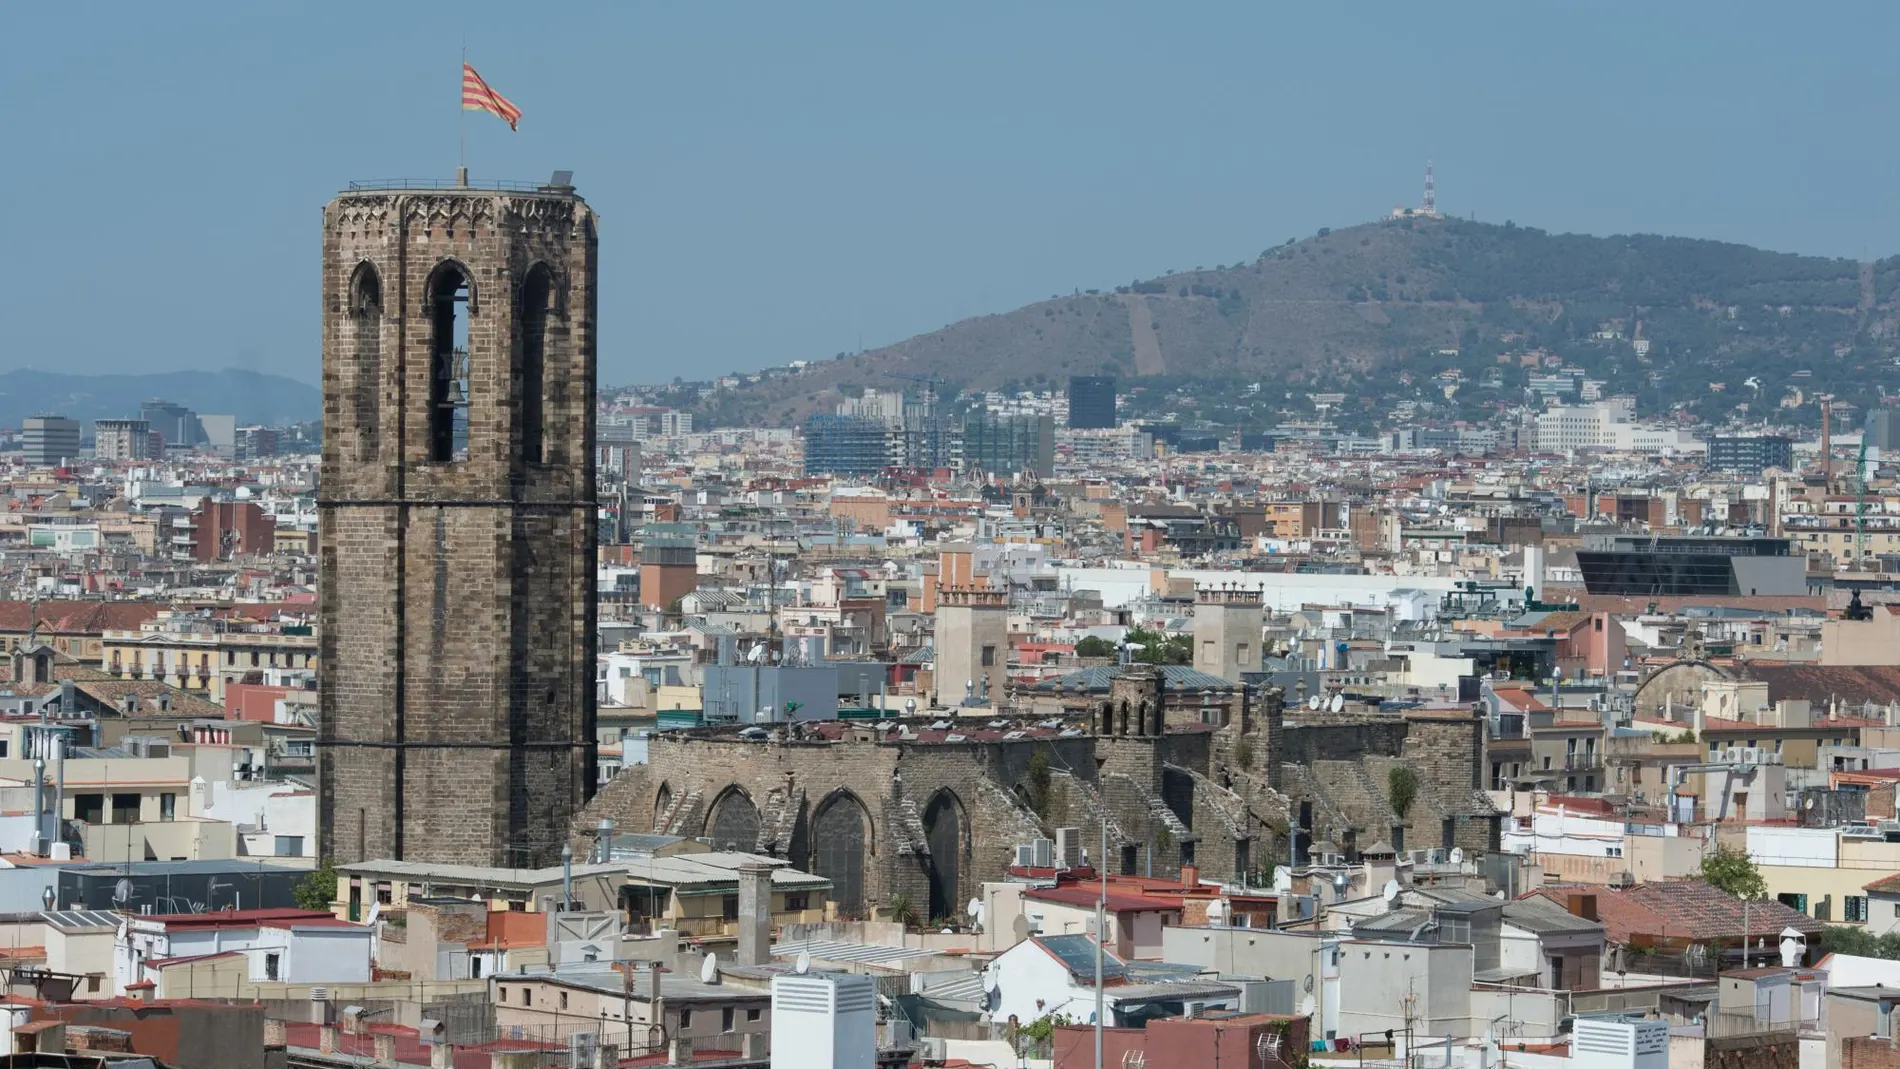 El presidente del Gremio de Hoteles, Joan Clos, anuncia que la ocupación hotelera crece en Barcelona el primer trimestre de 2019